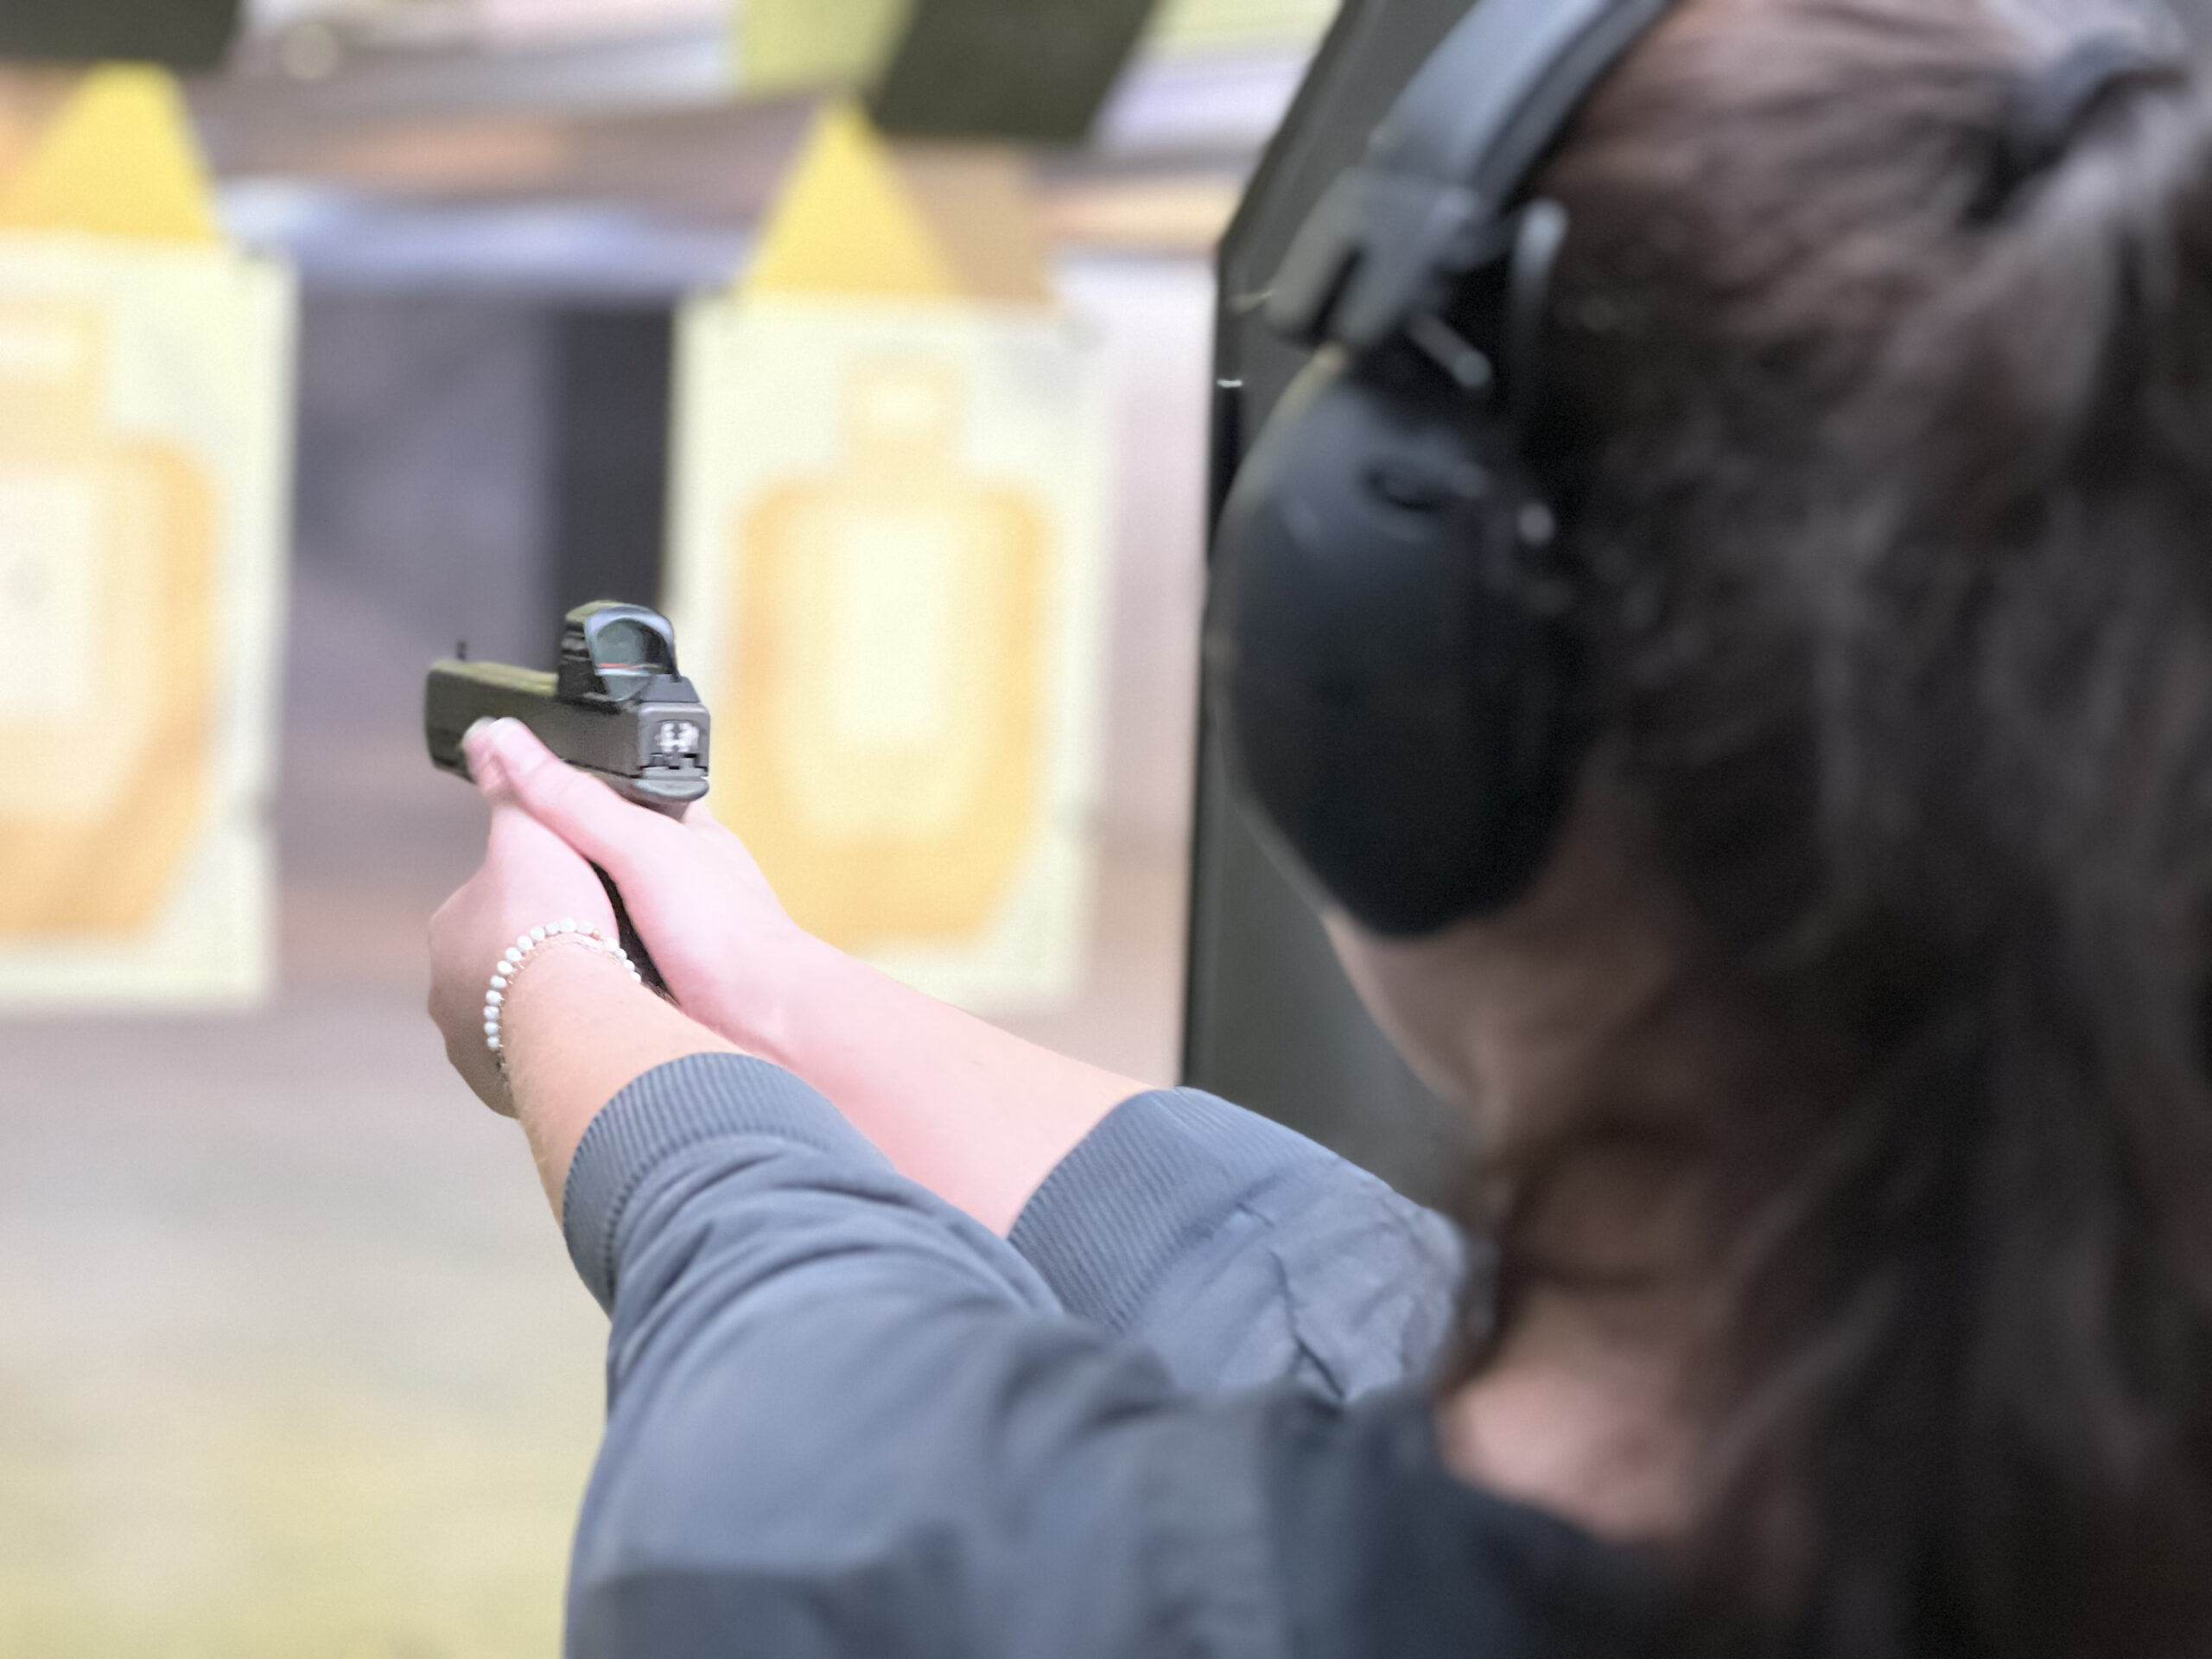 holster draw, gun training for women